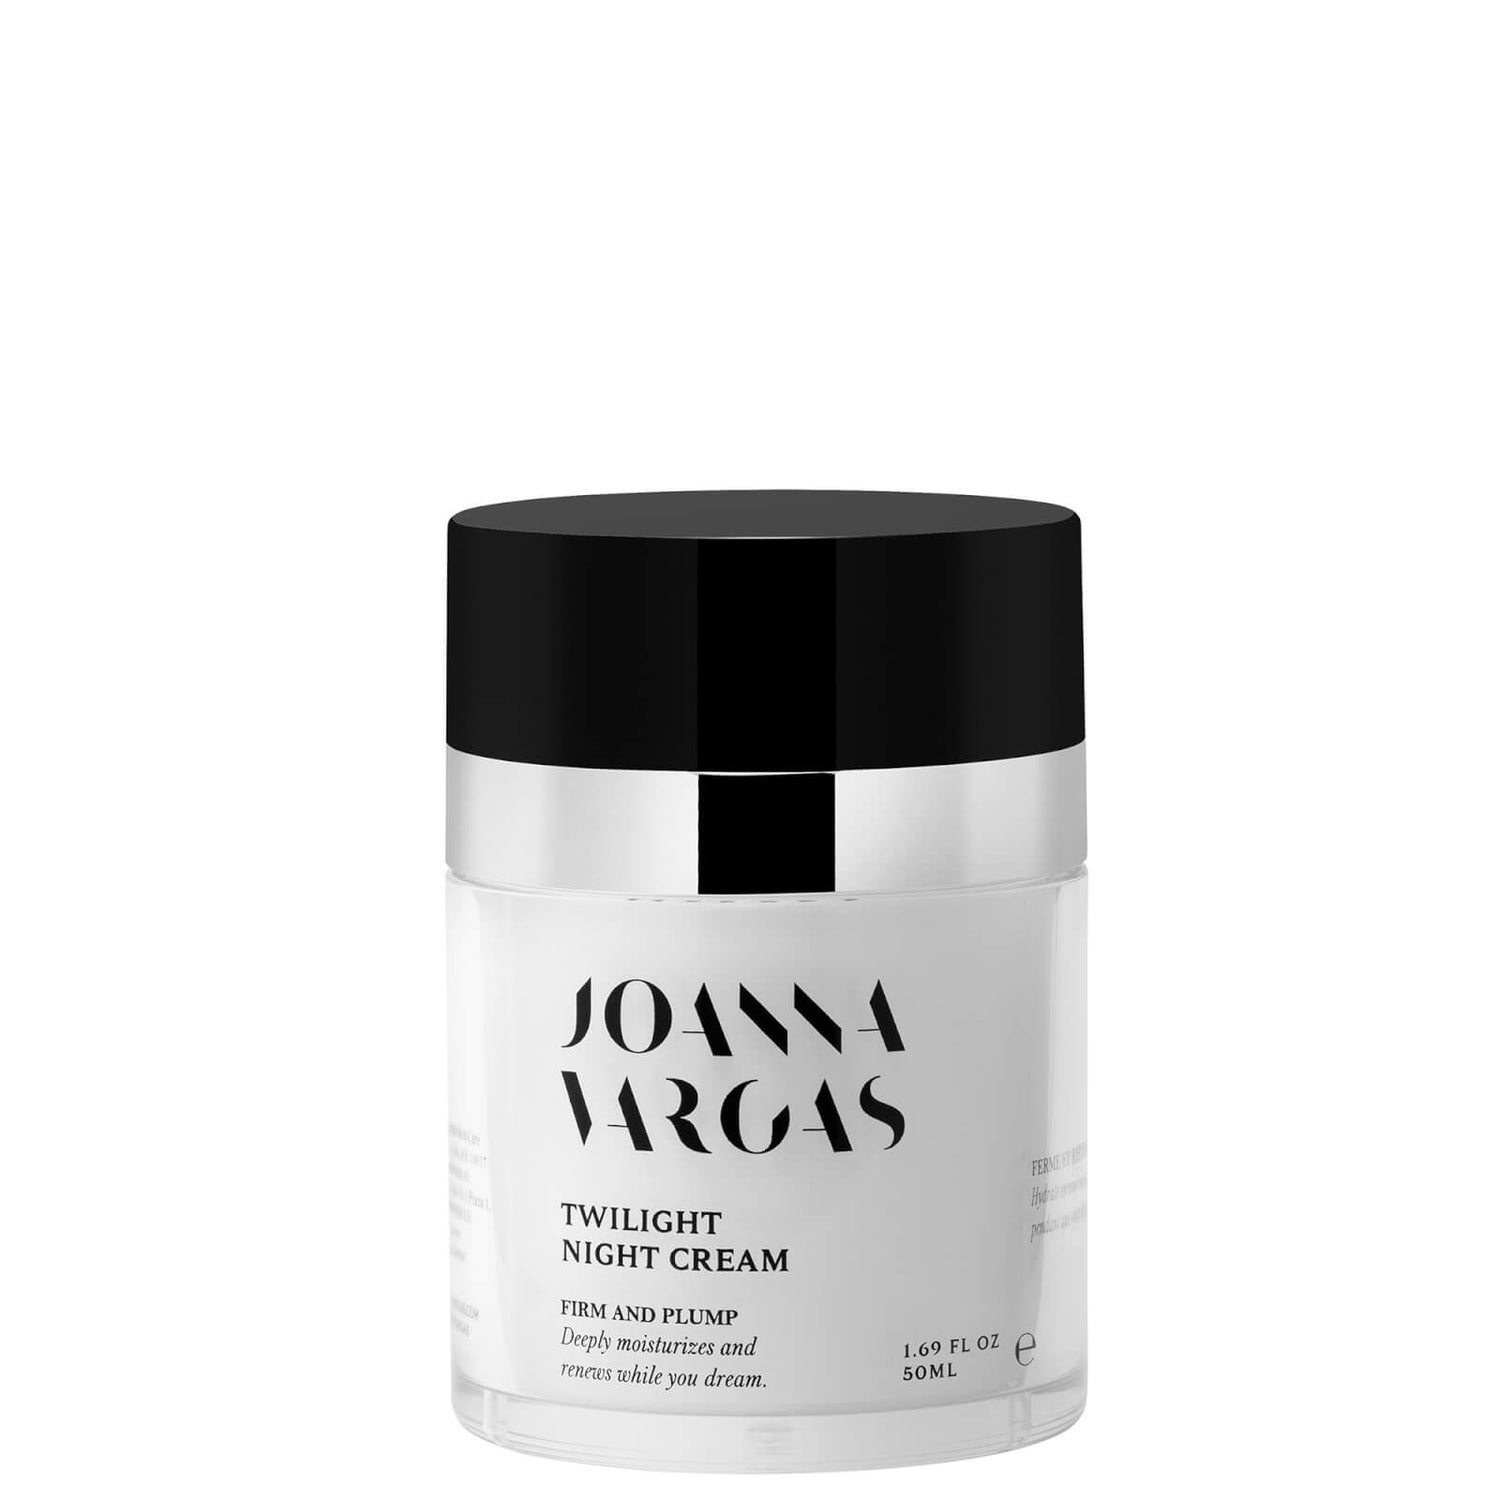 Joanna Vargas Twilight Night Cream 30ml